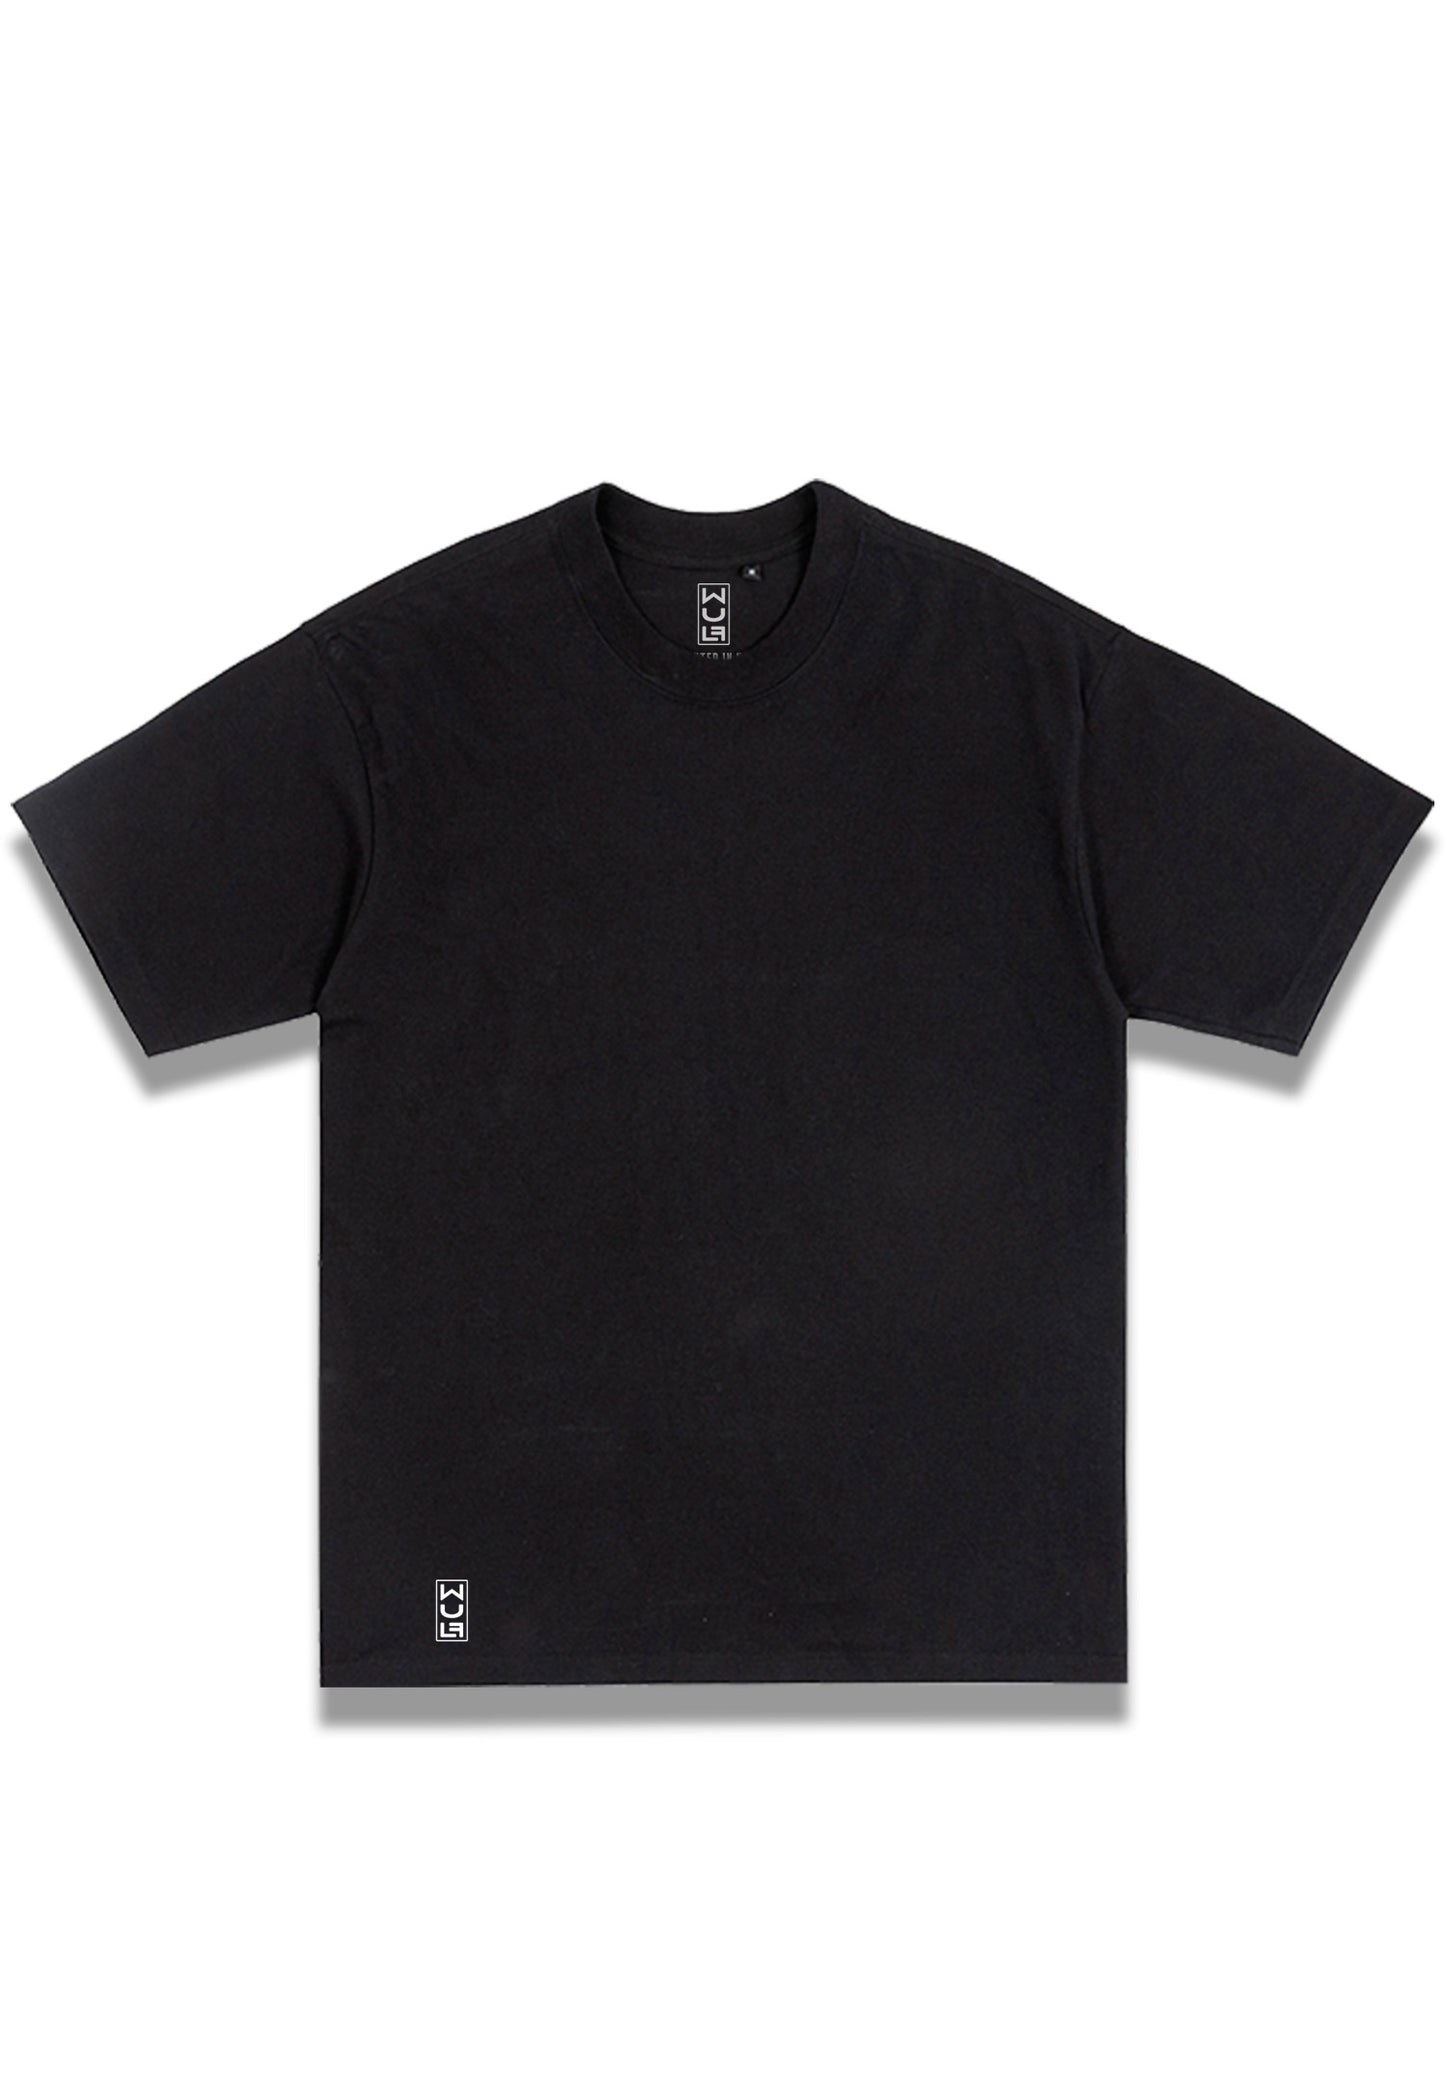 62°110 T-shirt, Black